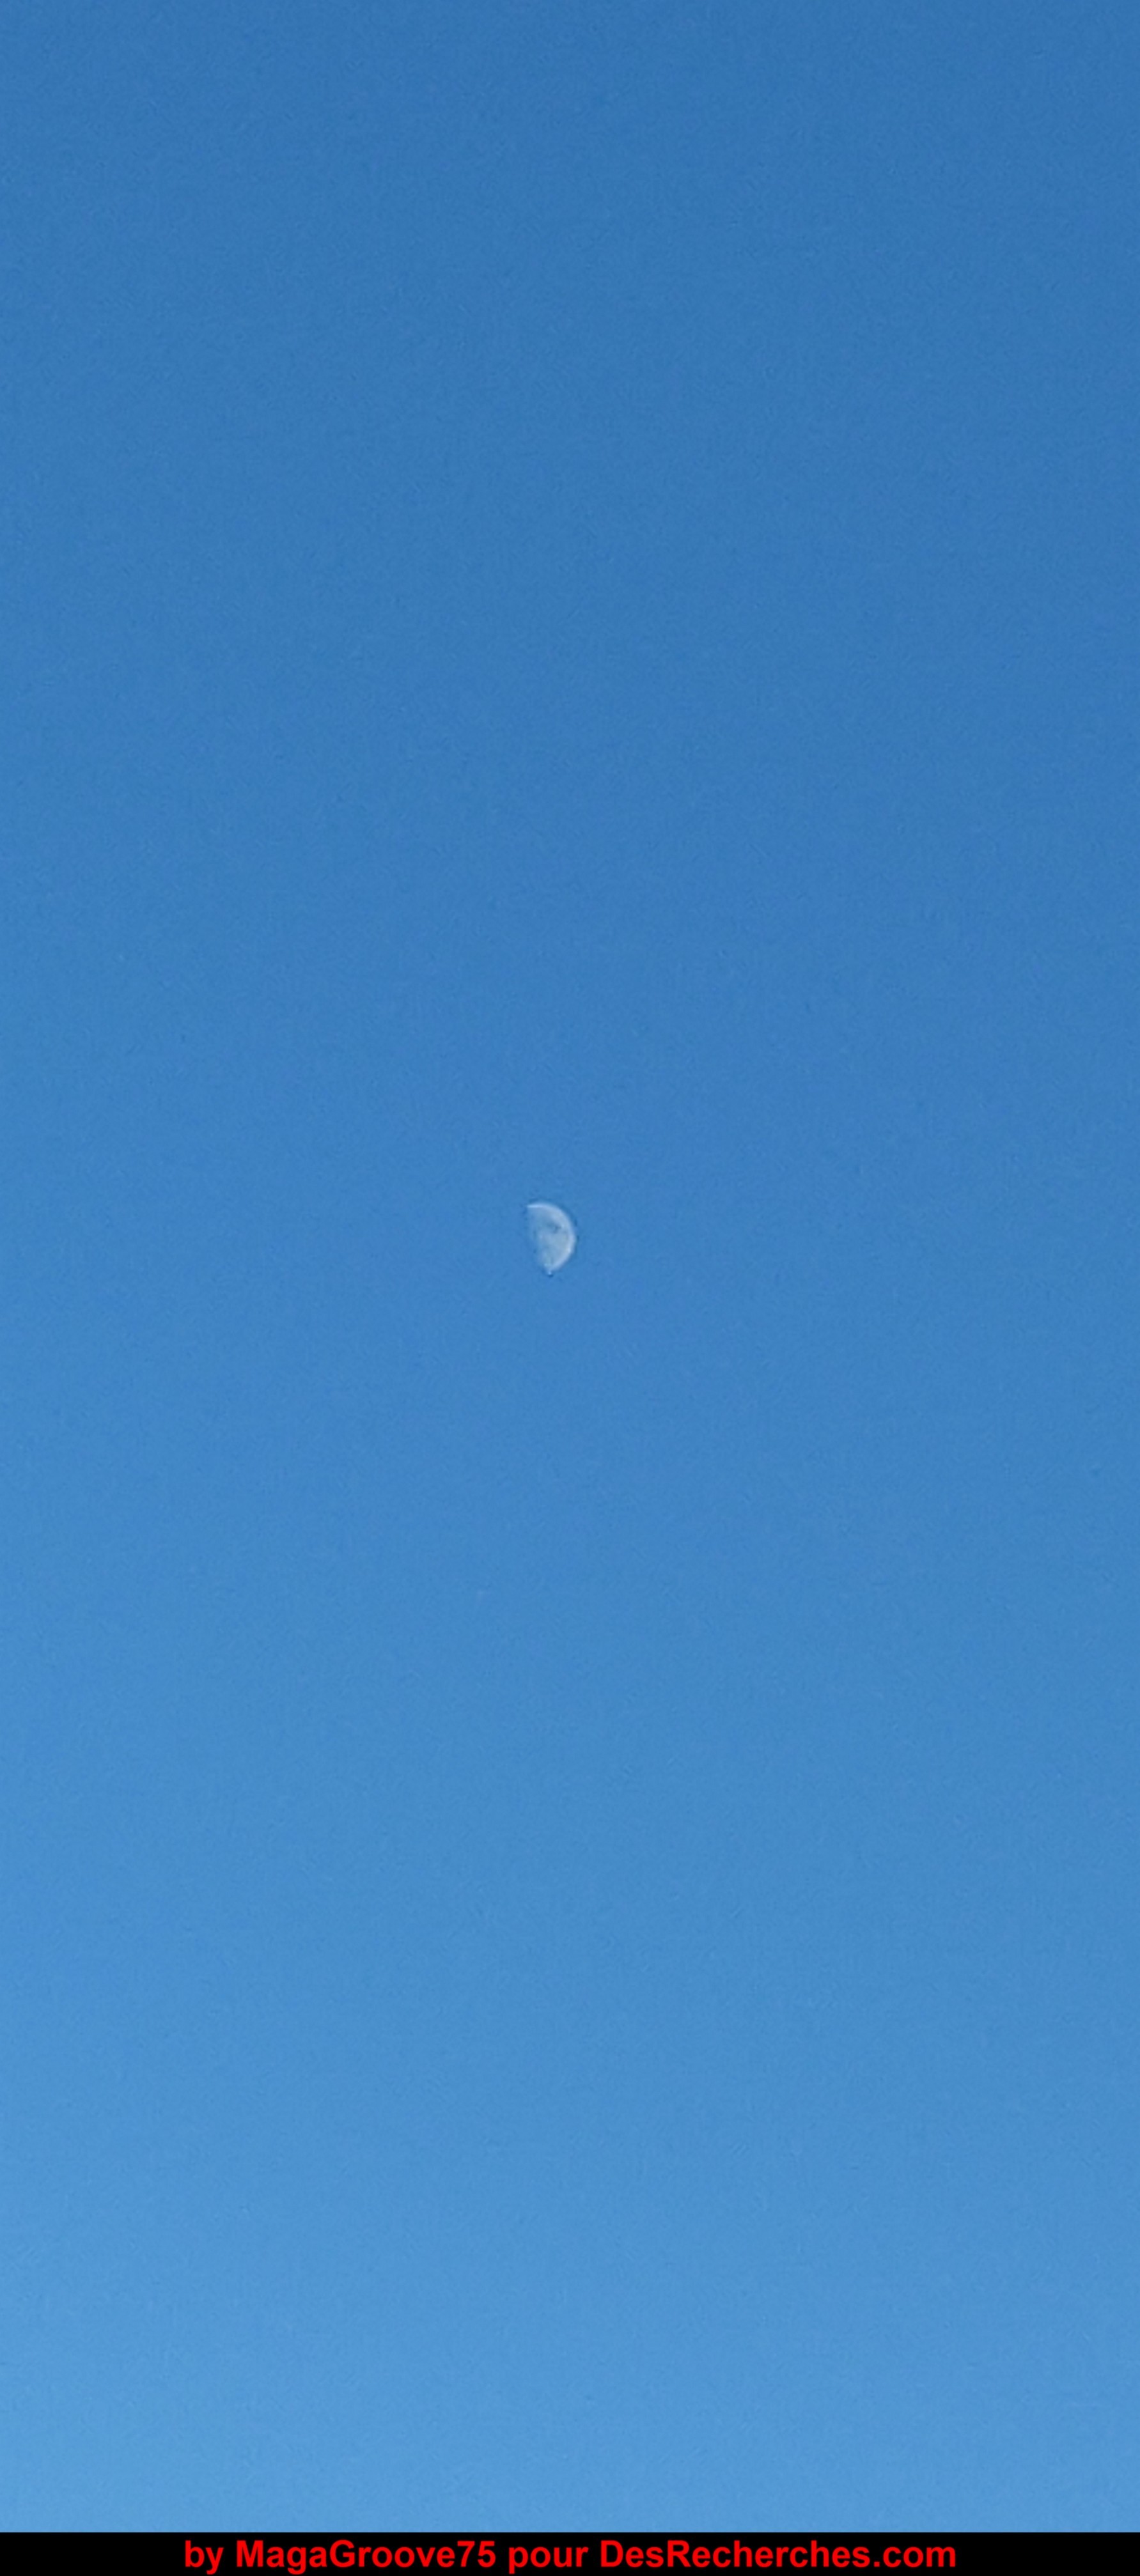 Lune visible le 07/2021 (Par MagaGroove75 pour DesRecherches.com)